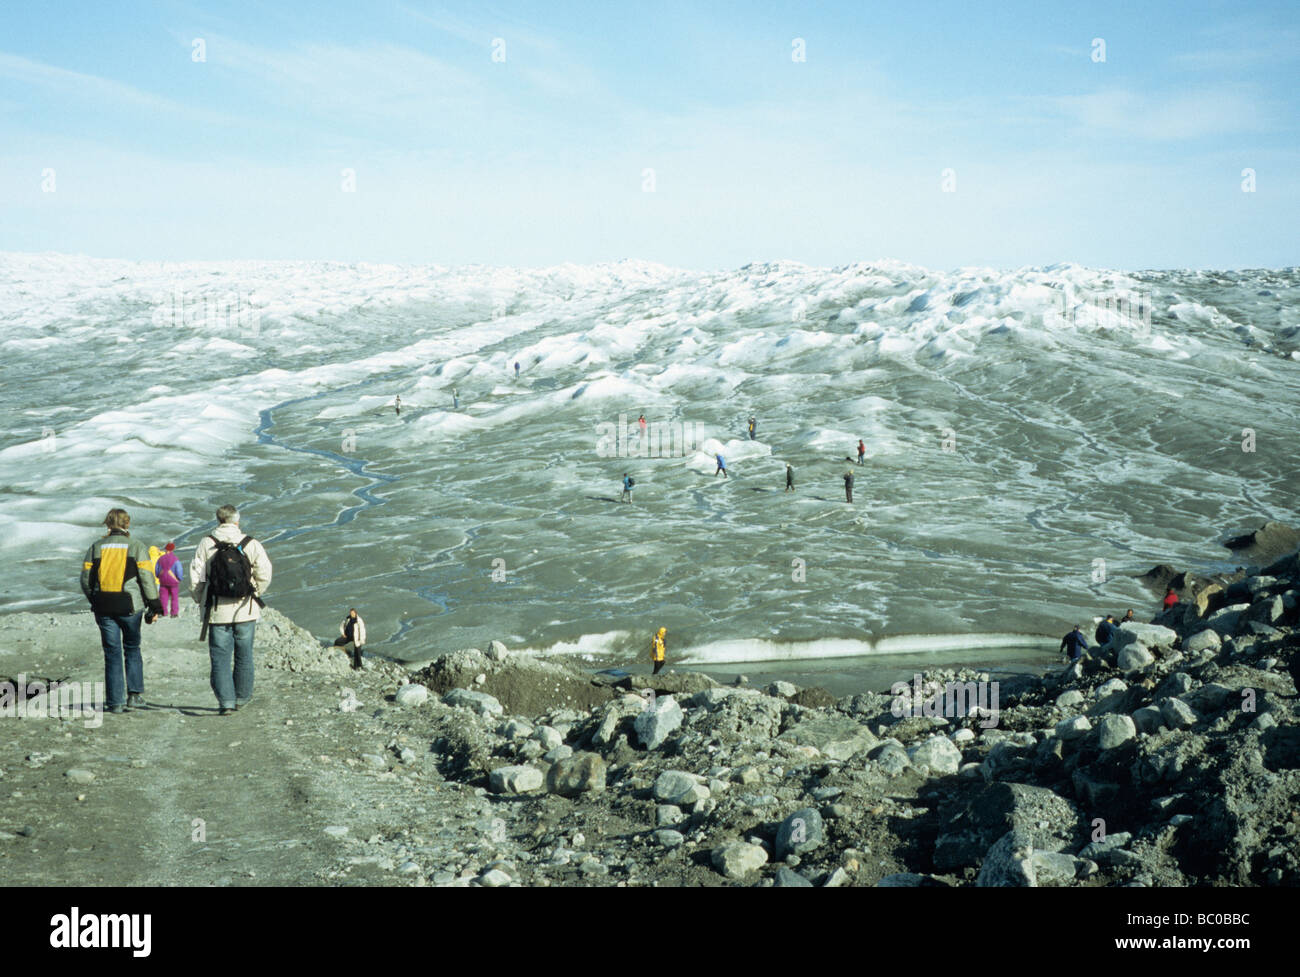 Les touristes à la découverte de la glace à l'intérieur des terres près de Kangerlussuaq, ouest du Groenland Banque D'Images